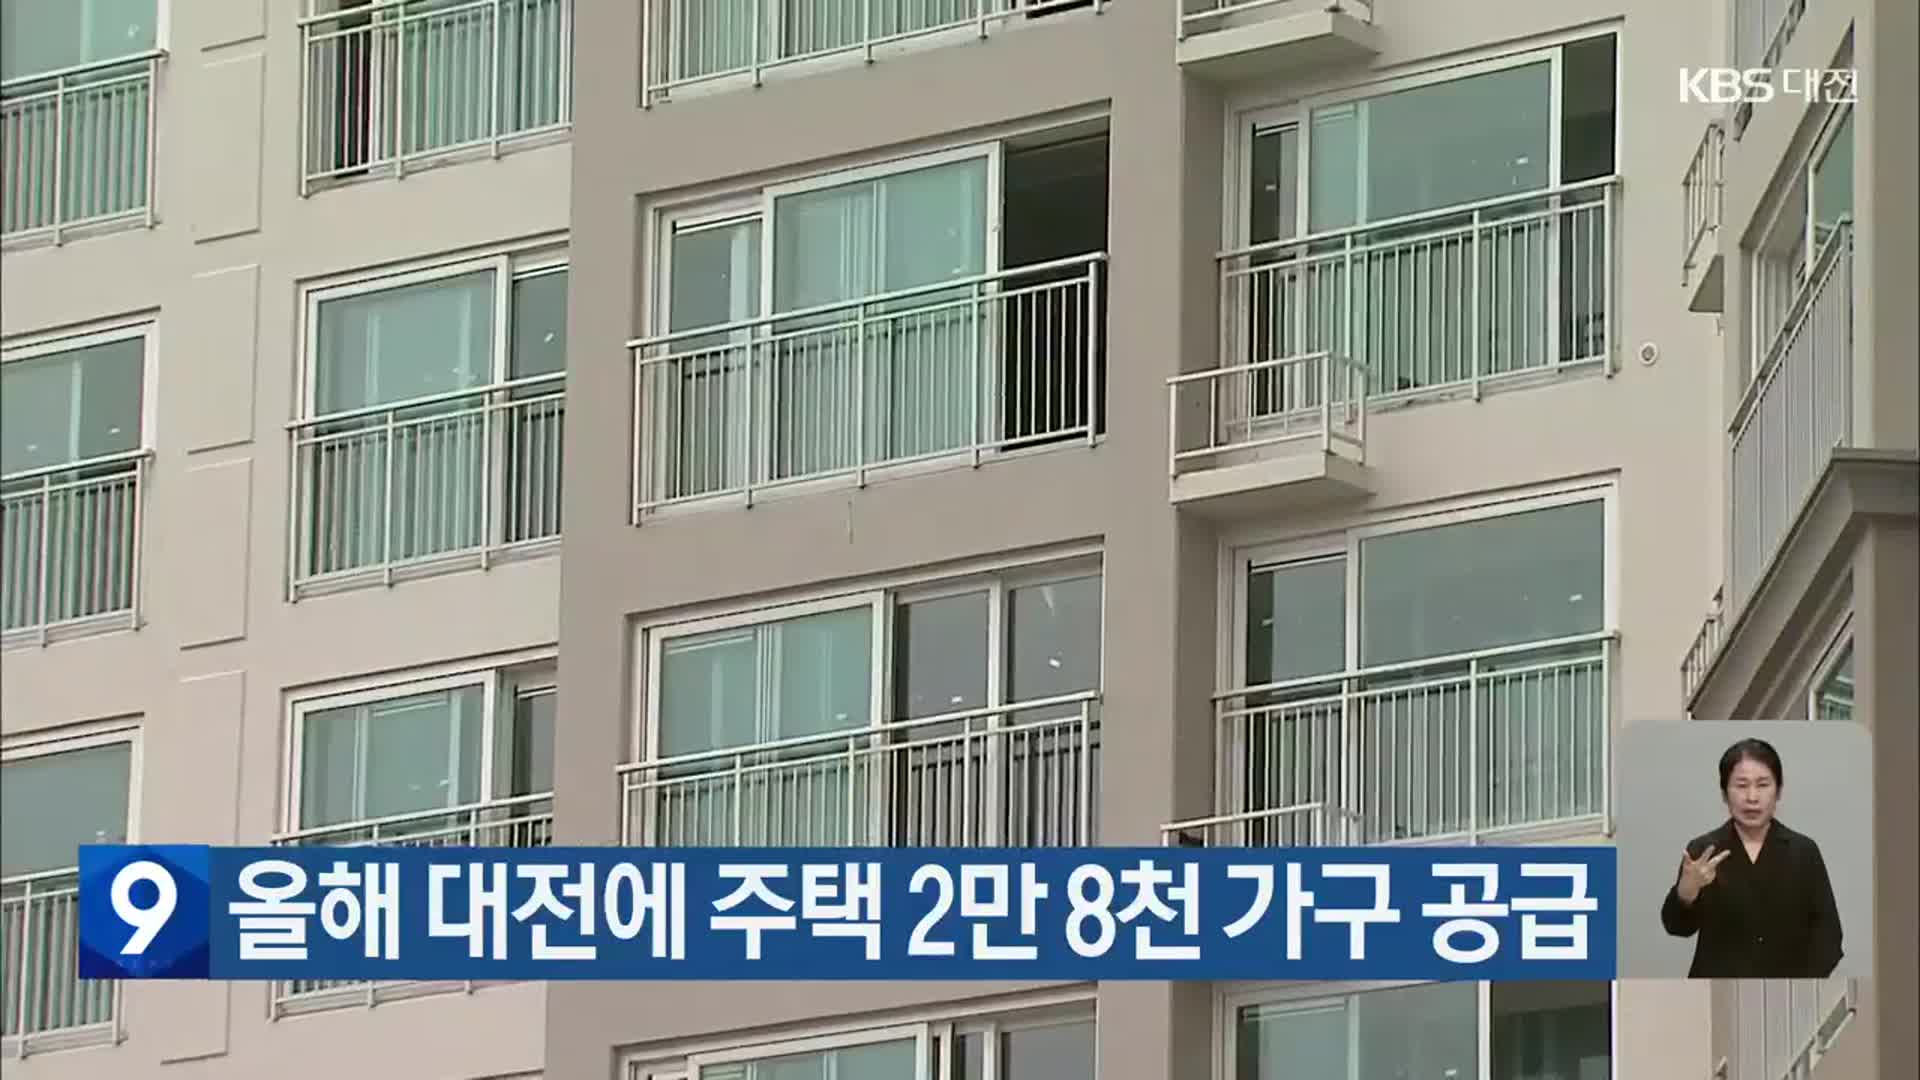 올해 대전에 주택 2만 8천 가구 공급